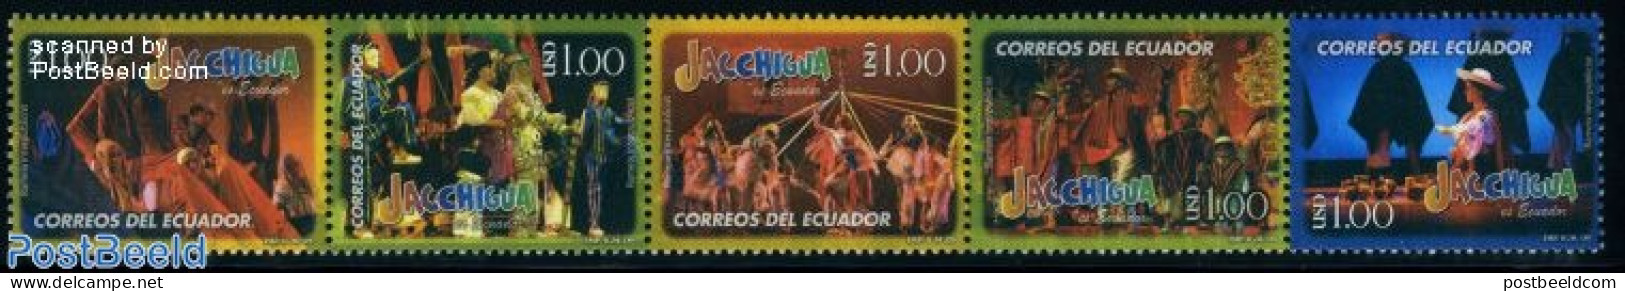 Ecuador 2009 Jacchigua Dance Group 5v [::::], Mint NH, Performance Art - Various - Dance & Ballet - Folklore - Dans